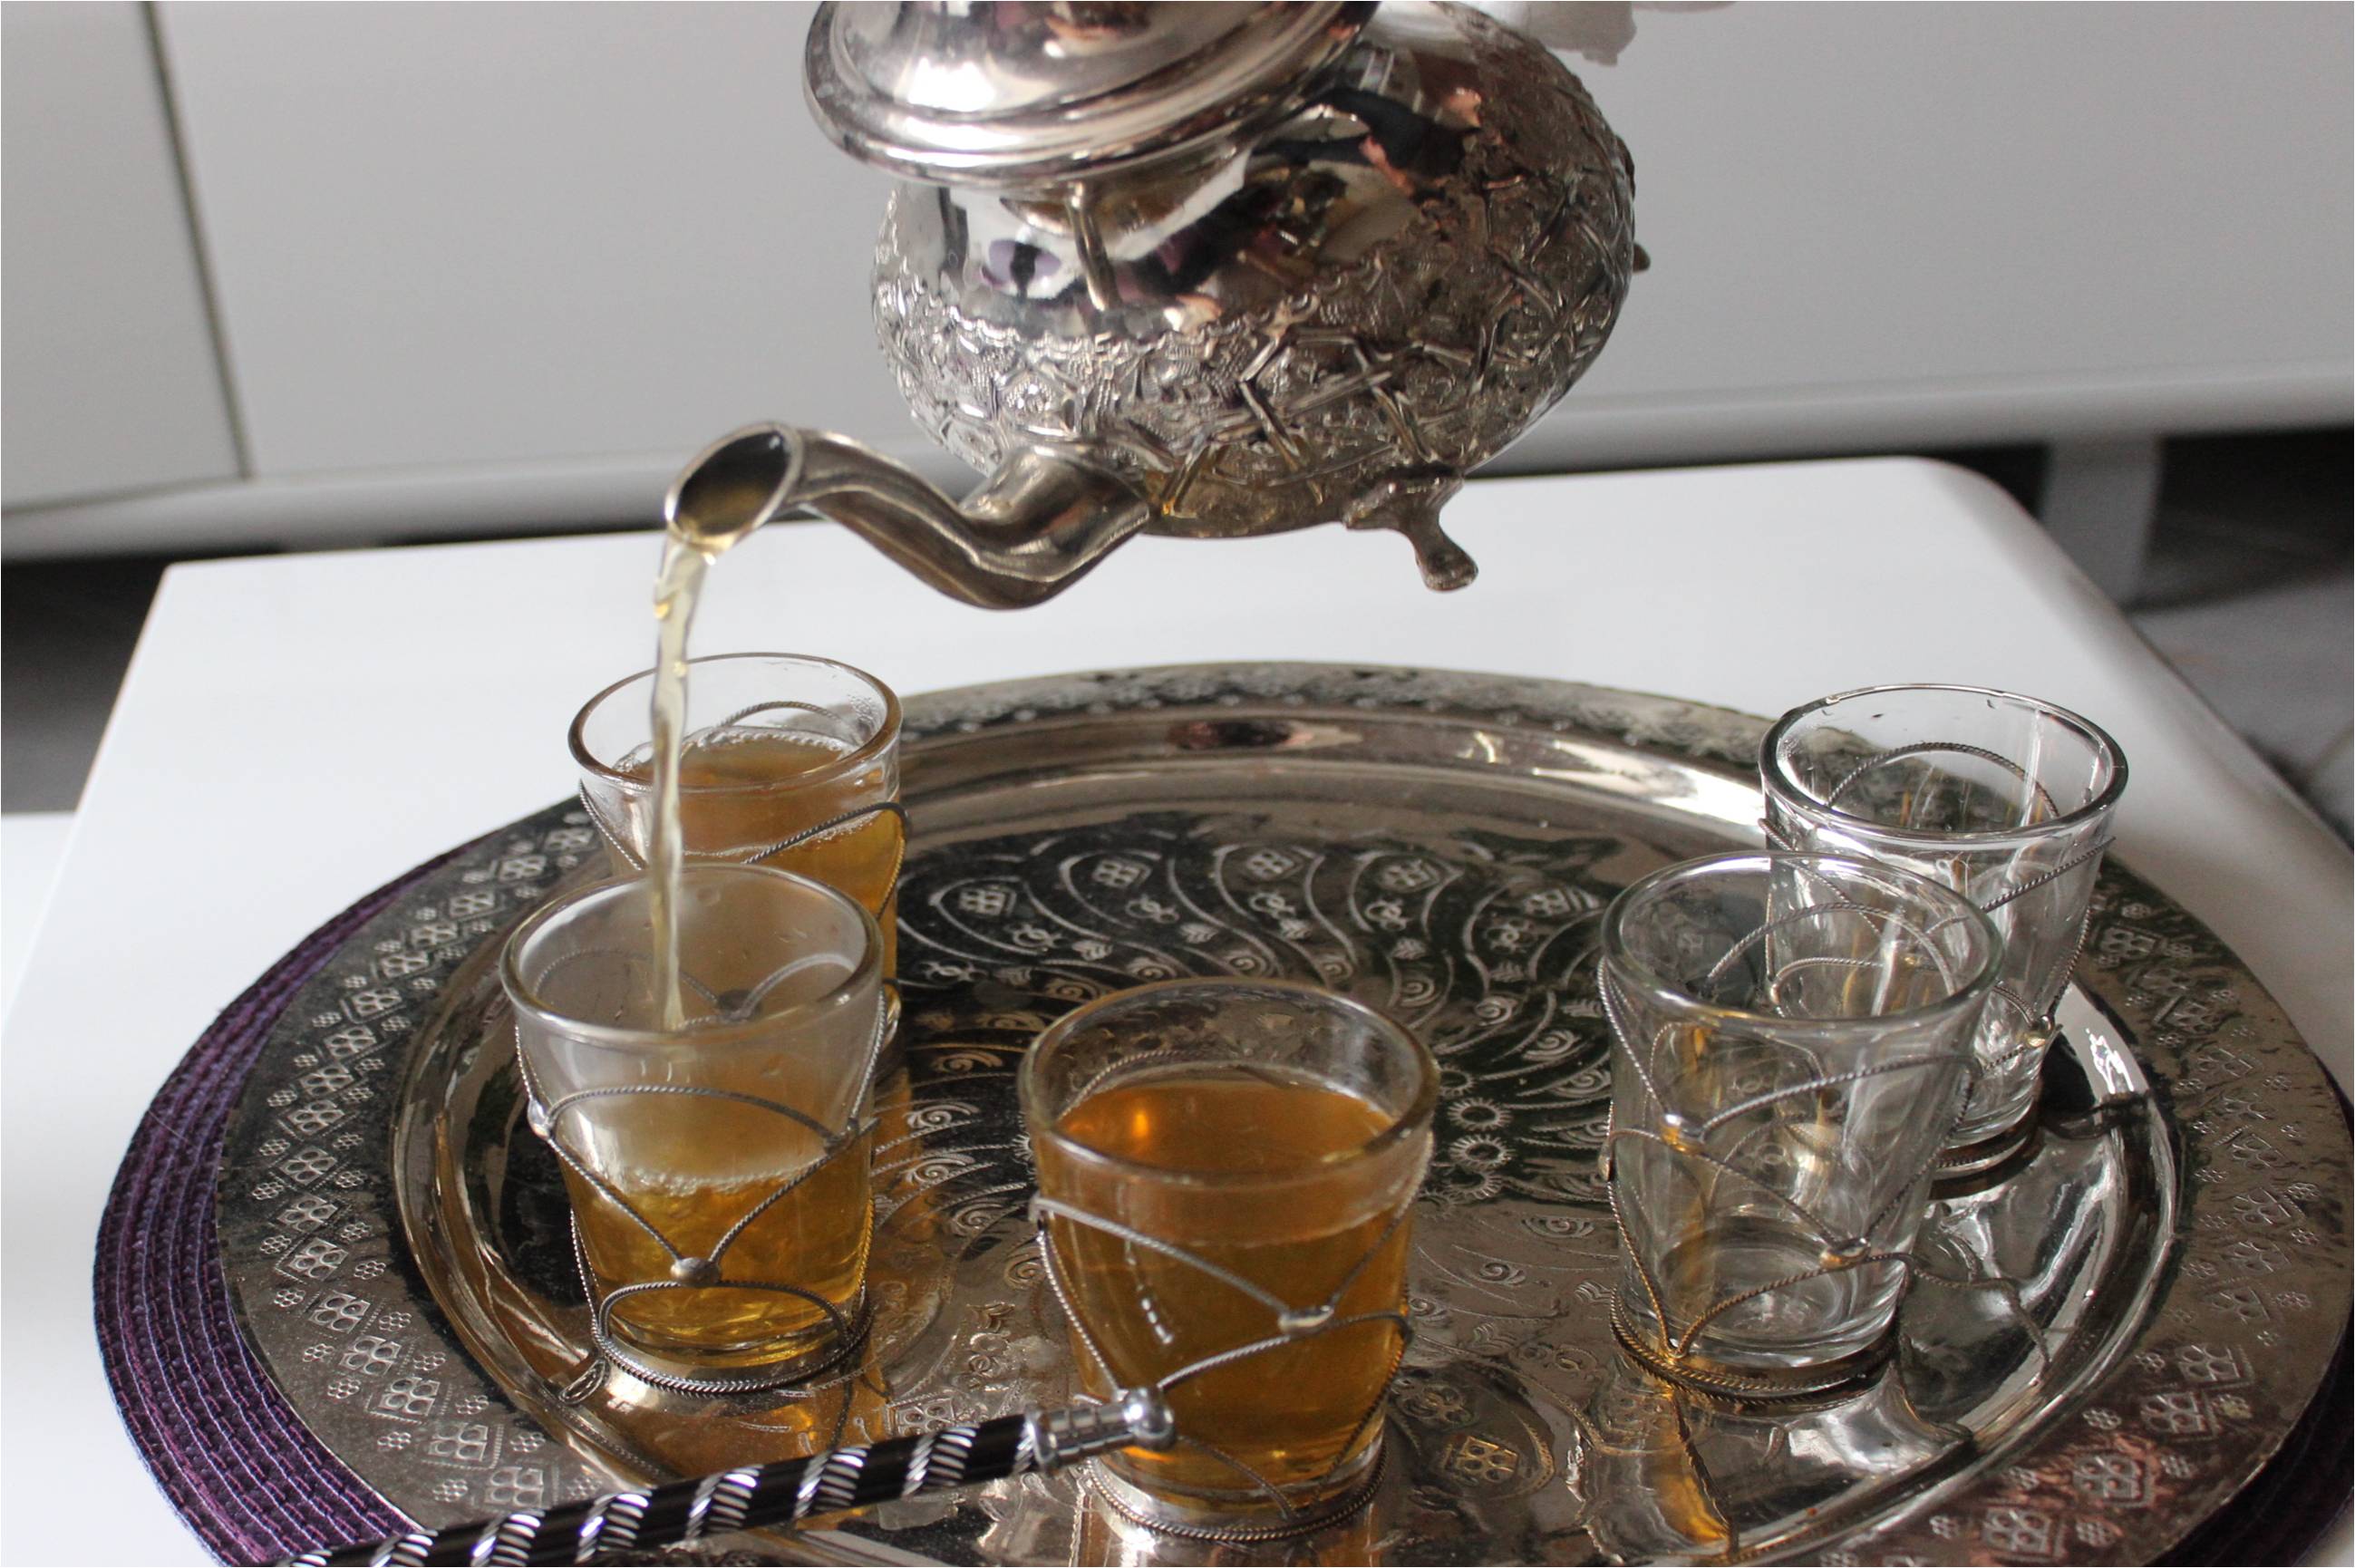 Thé à la menthe : Comment préparer le thé vert à la menthe marocain ?